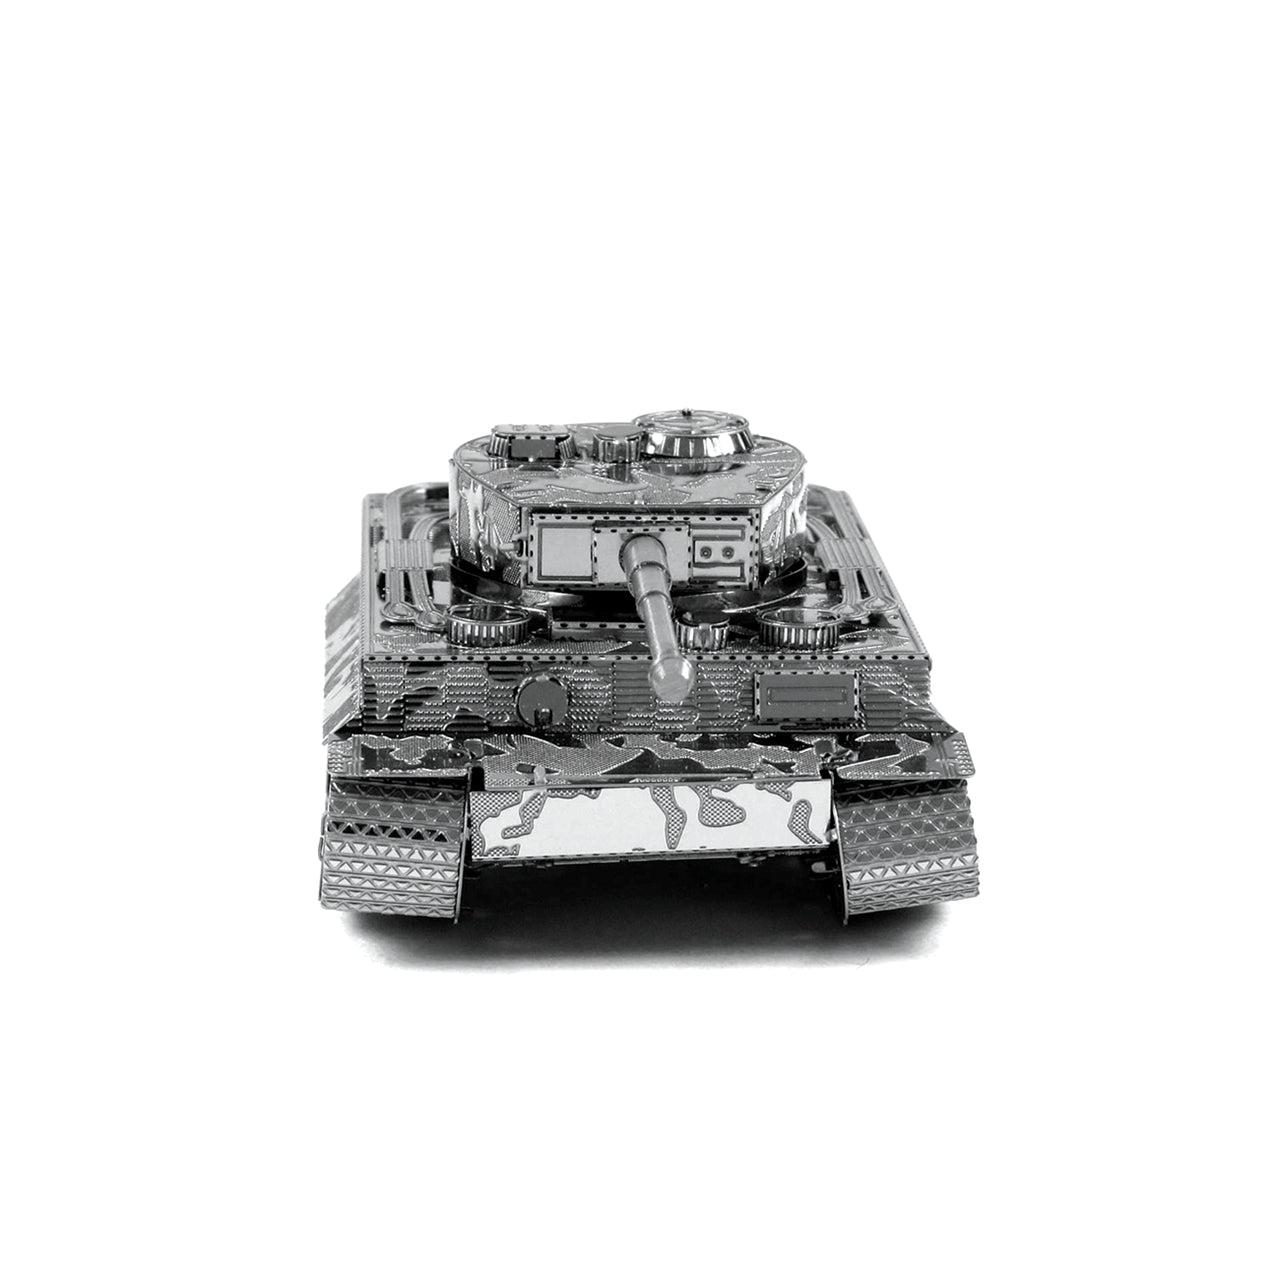 Tiger I Tank 3D Steel Model Kit Metal Earth